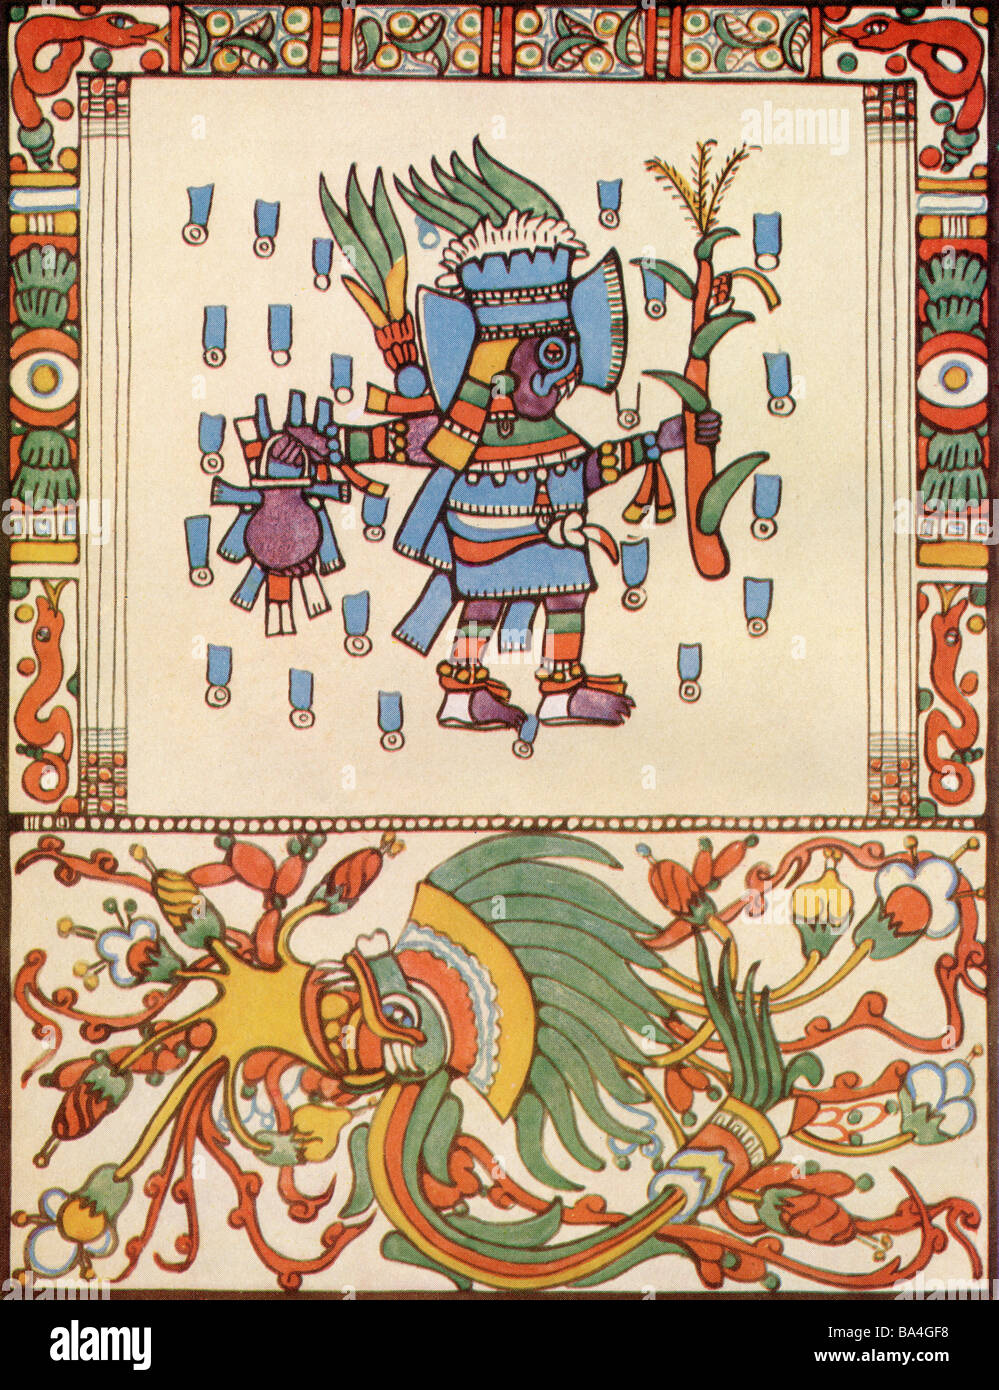 Tlaloc Dios de la lluvia del Codex Vaticanus. Una deidad en la religión azteca un dios de la lluvia, la fertilidad y el agua Foto de stock